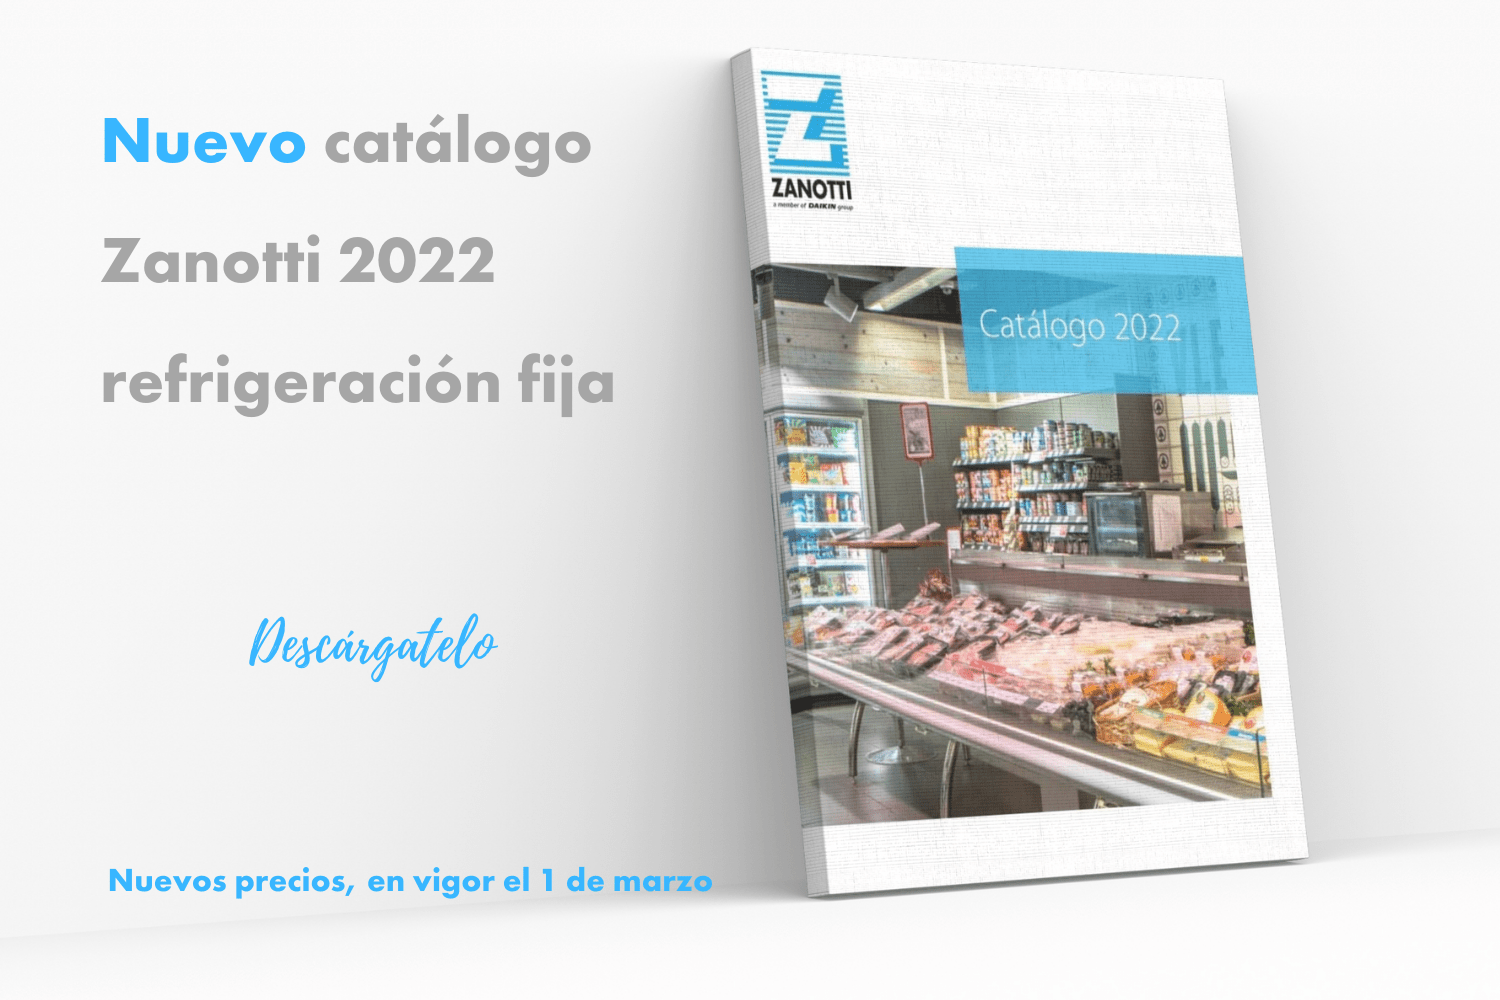 Nuevas tarifas Zanotti 2022 (1500 × 1000 px) CADENA SUMINTRO